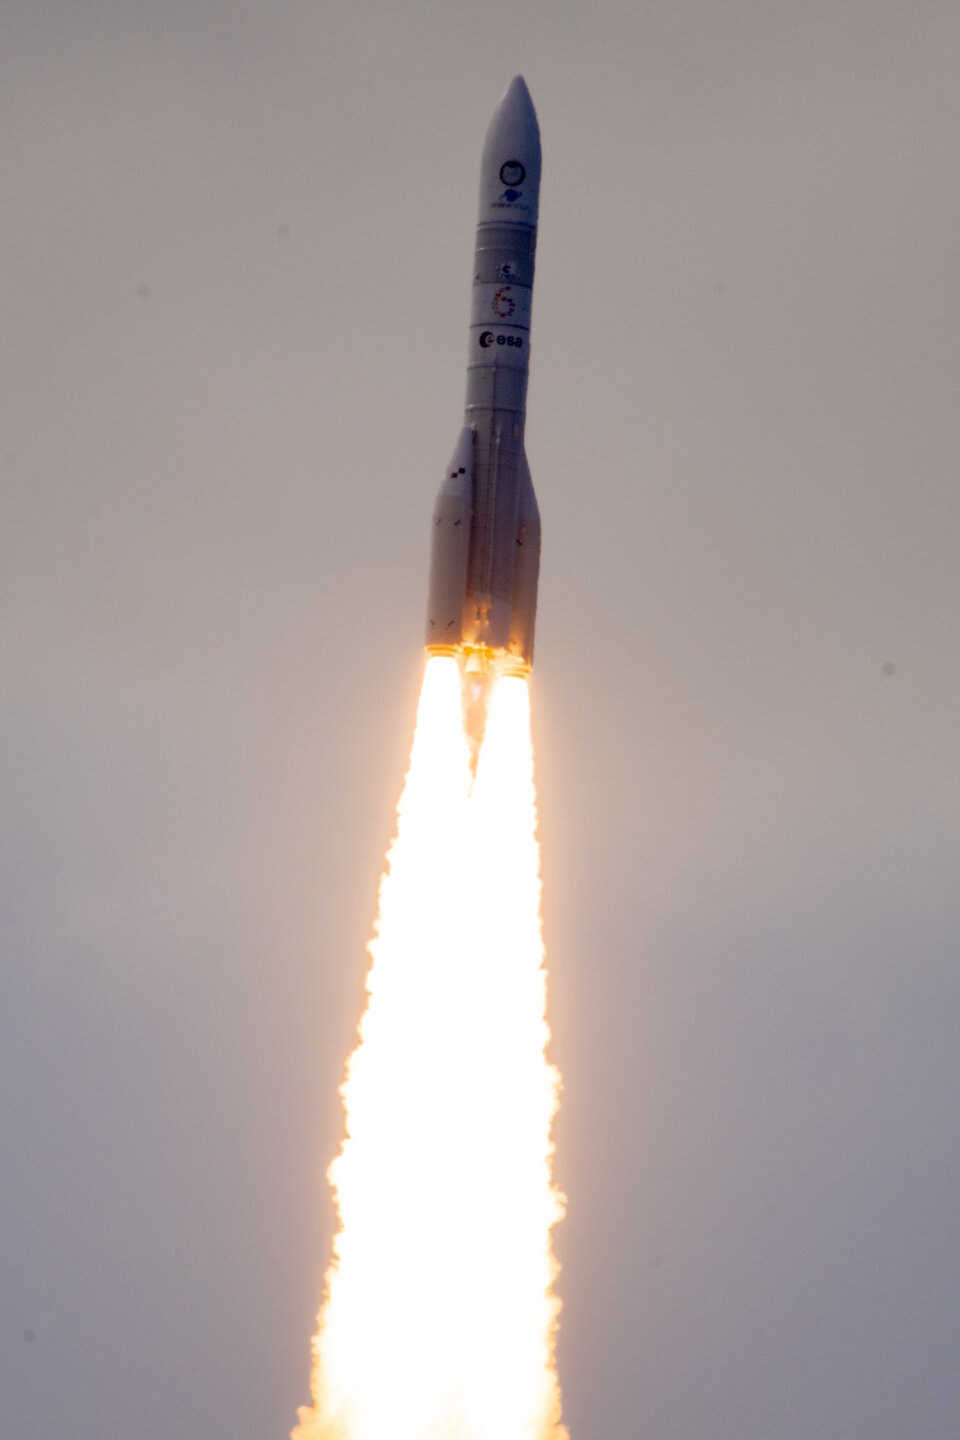 Ariane 6 takes flight